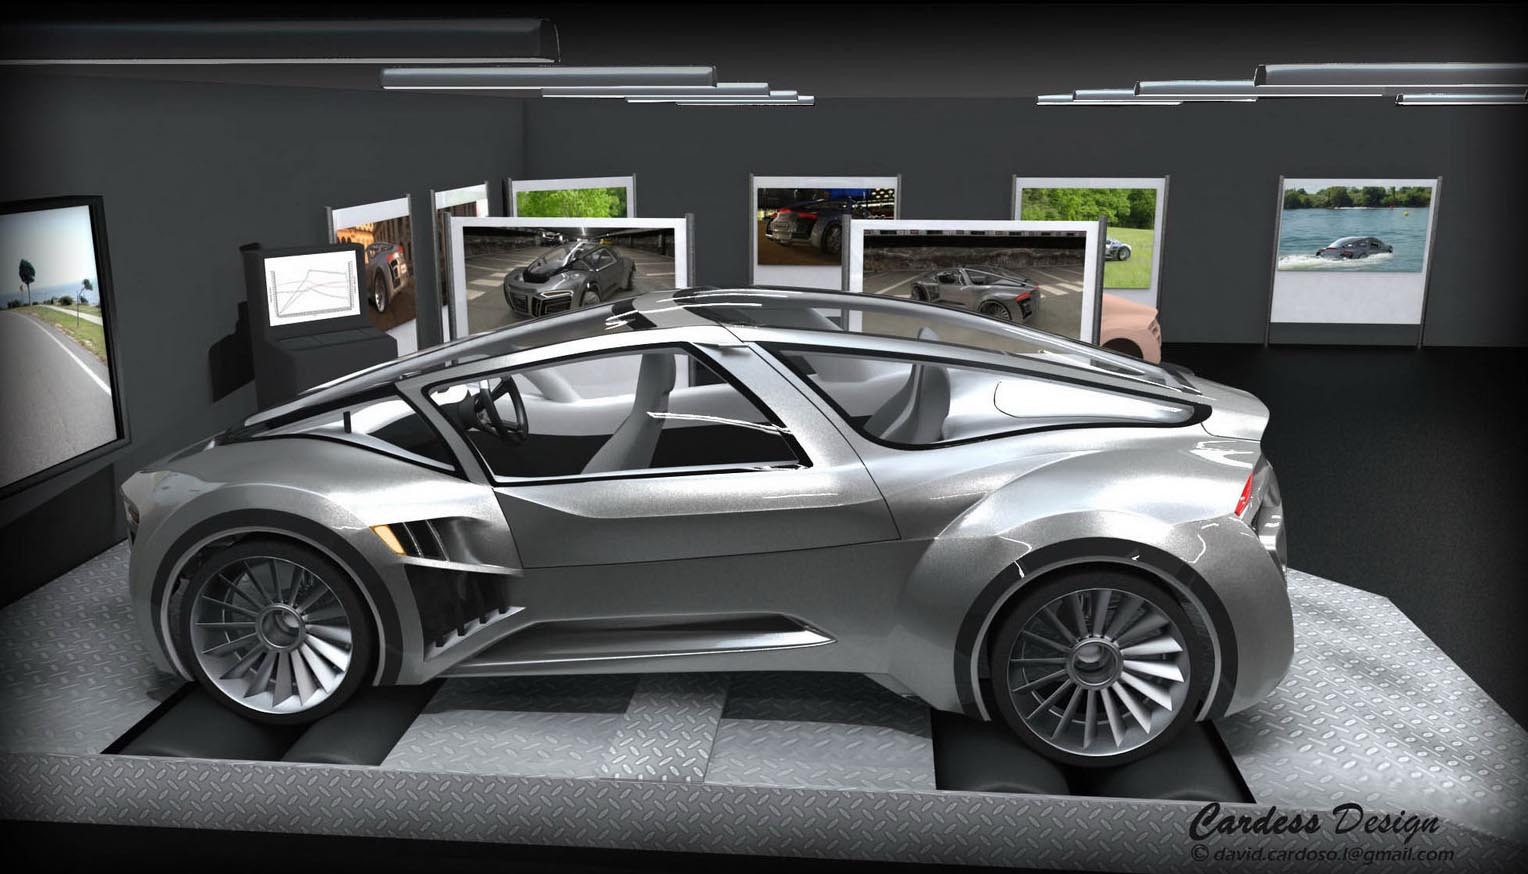 Audi Hydron are o configuratie cu 3 locuri si un design atat aerodinamic, dar si hidrodinamic